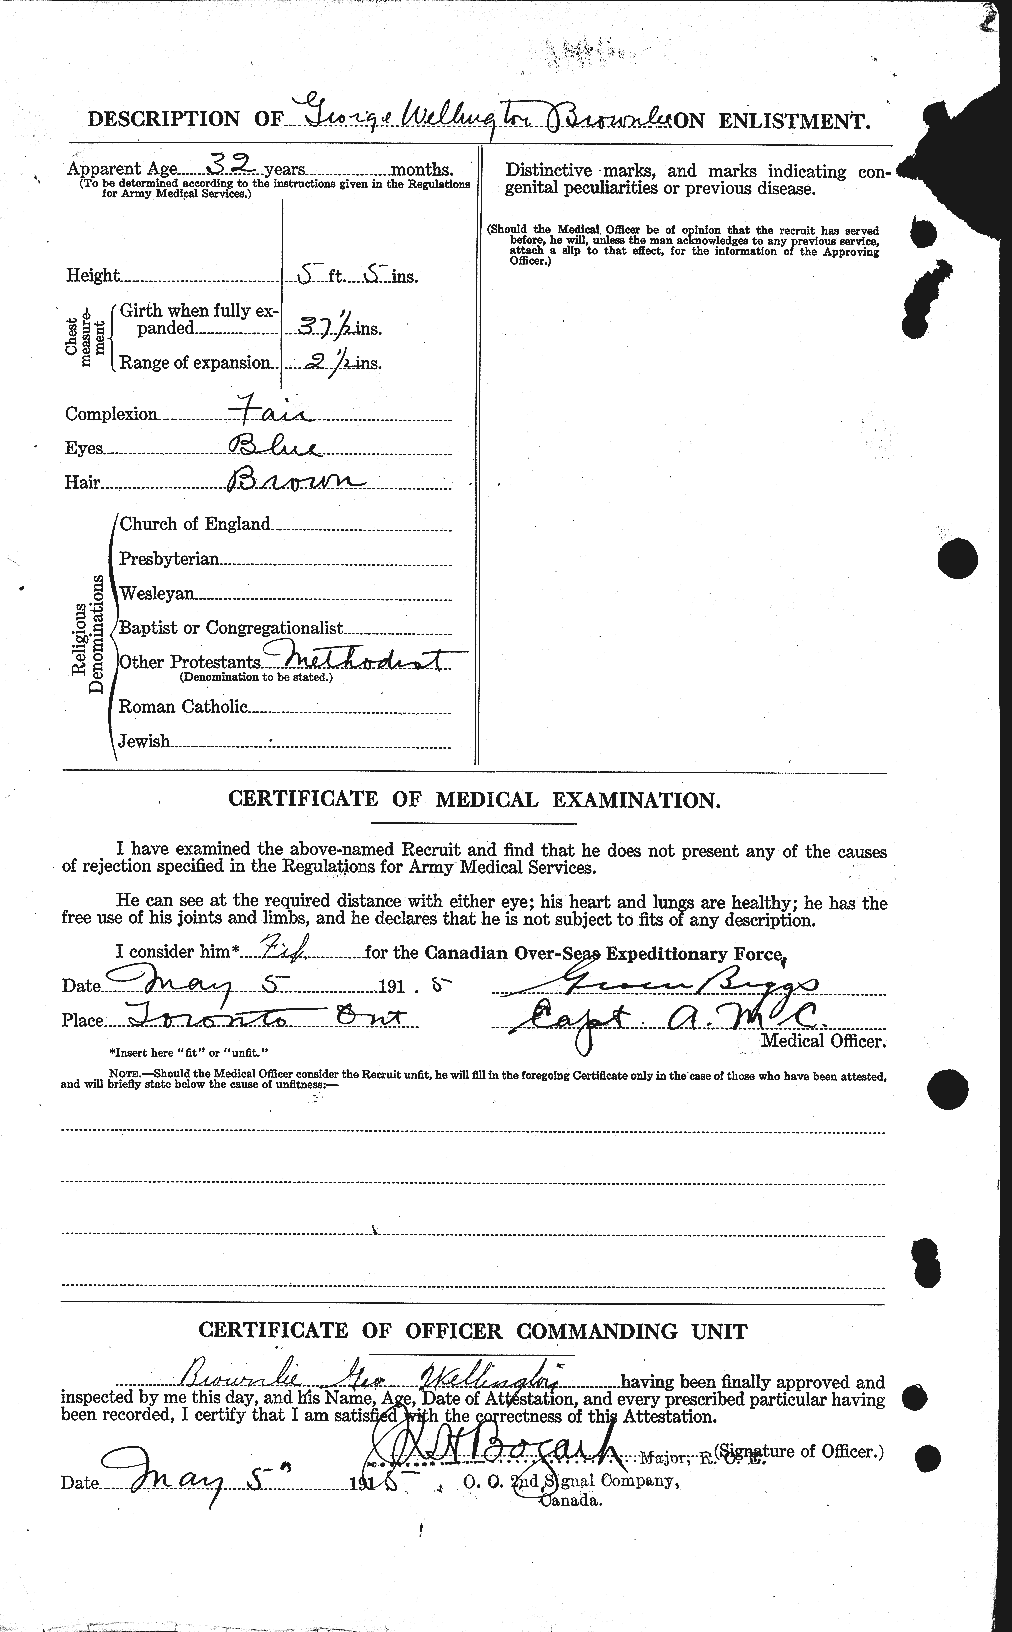 Dossiers du Personnel de la Première Guerre mondiale - CEC 267562b